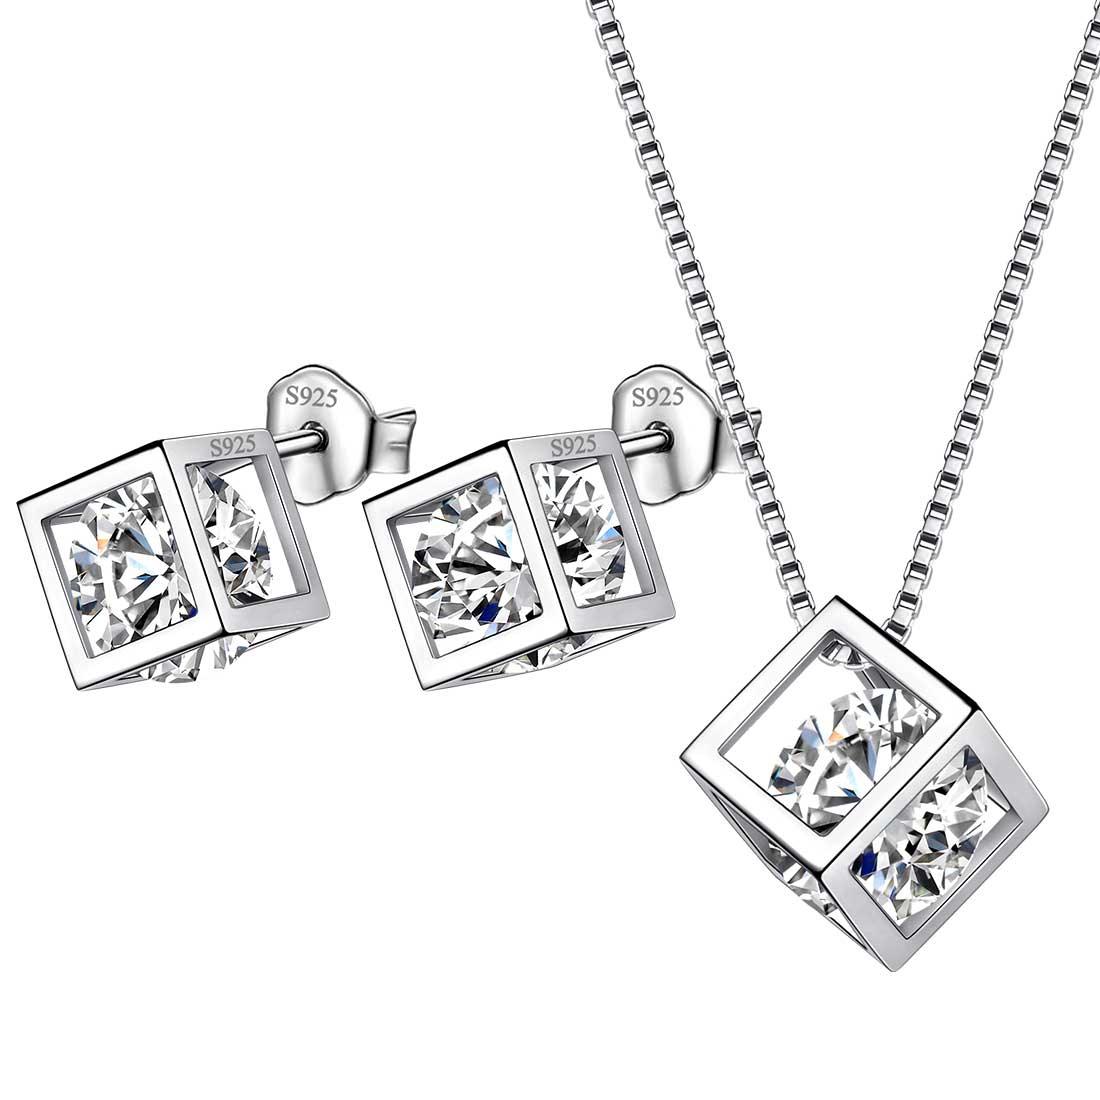 3D Cube Birthstone April Diamond Jewelry Set 3PCS - Jewelry Set - Aurora Tears